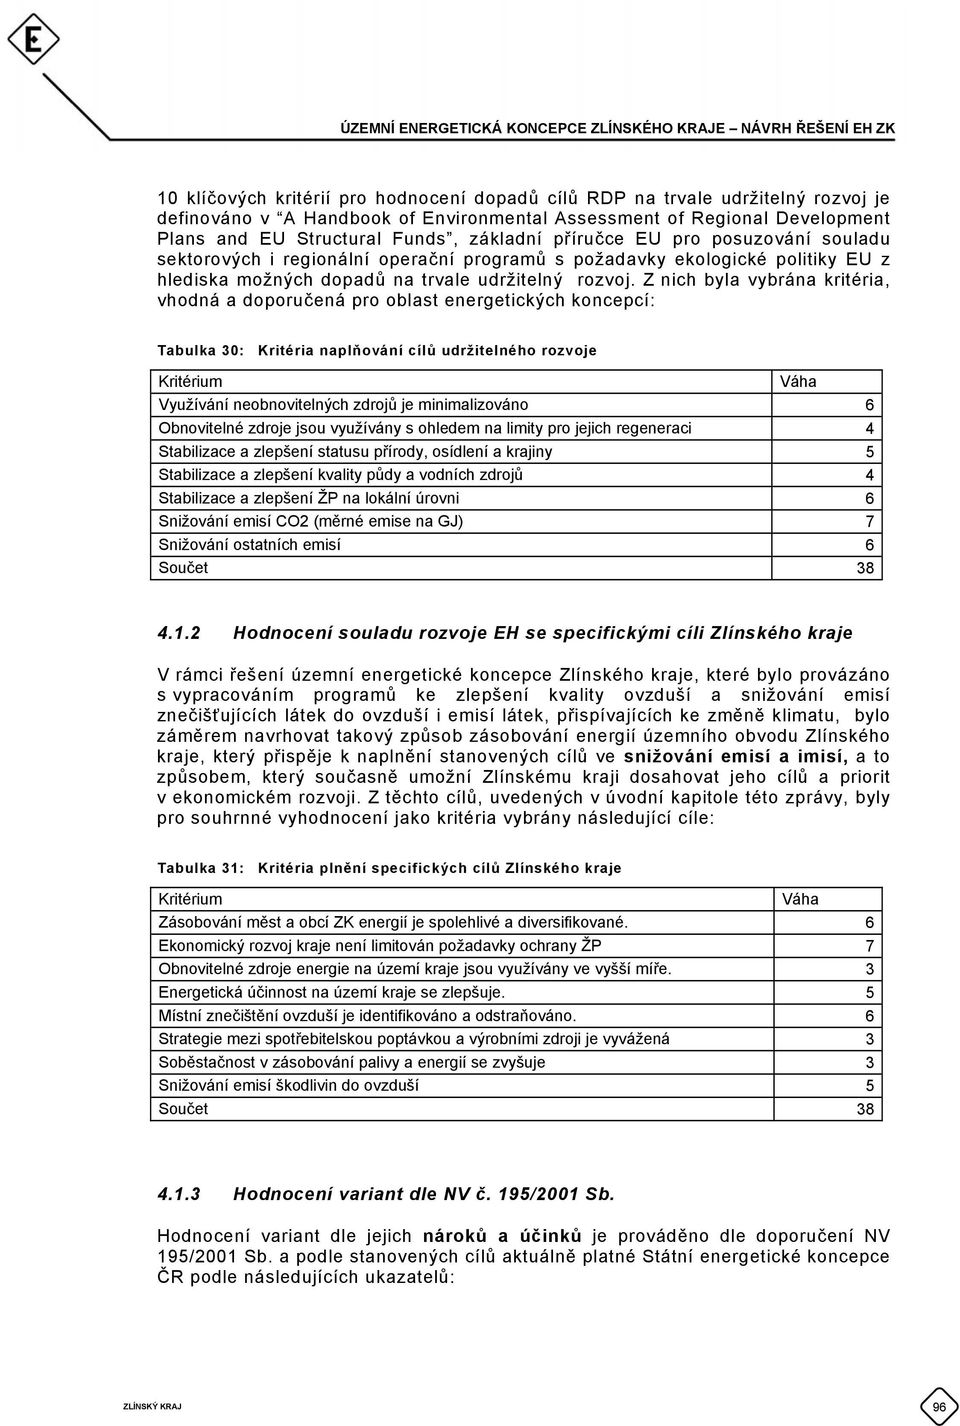 Z nich byla vybrána kritéria, vhodná a doporučená pro oblast energetických koncepcí: Tabulka 30: Kritéria naplňování cílů udržitelného rozvoje Kritérium Váha Využívání neobnovitelných zdrojů je